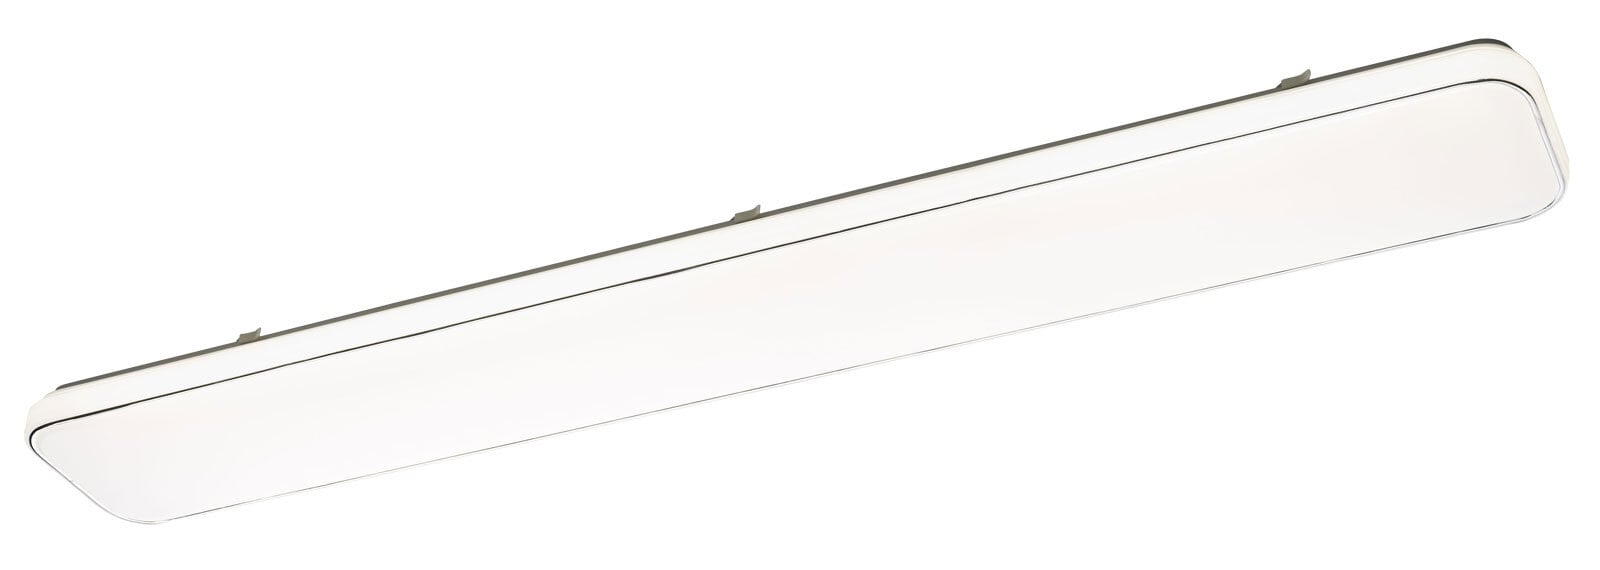 LED Deckenlampe SIMPLY 120 cm weiß /silberfarbig